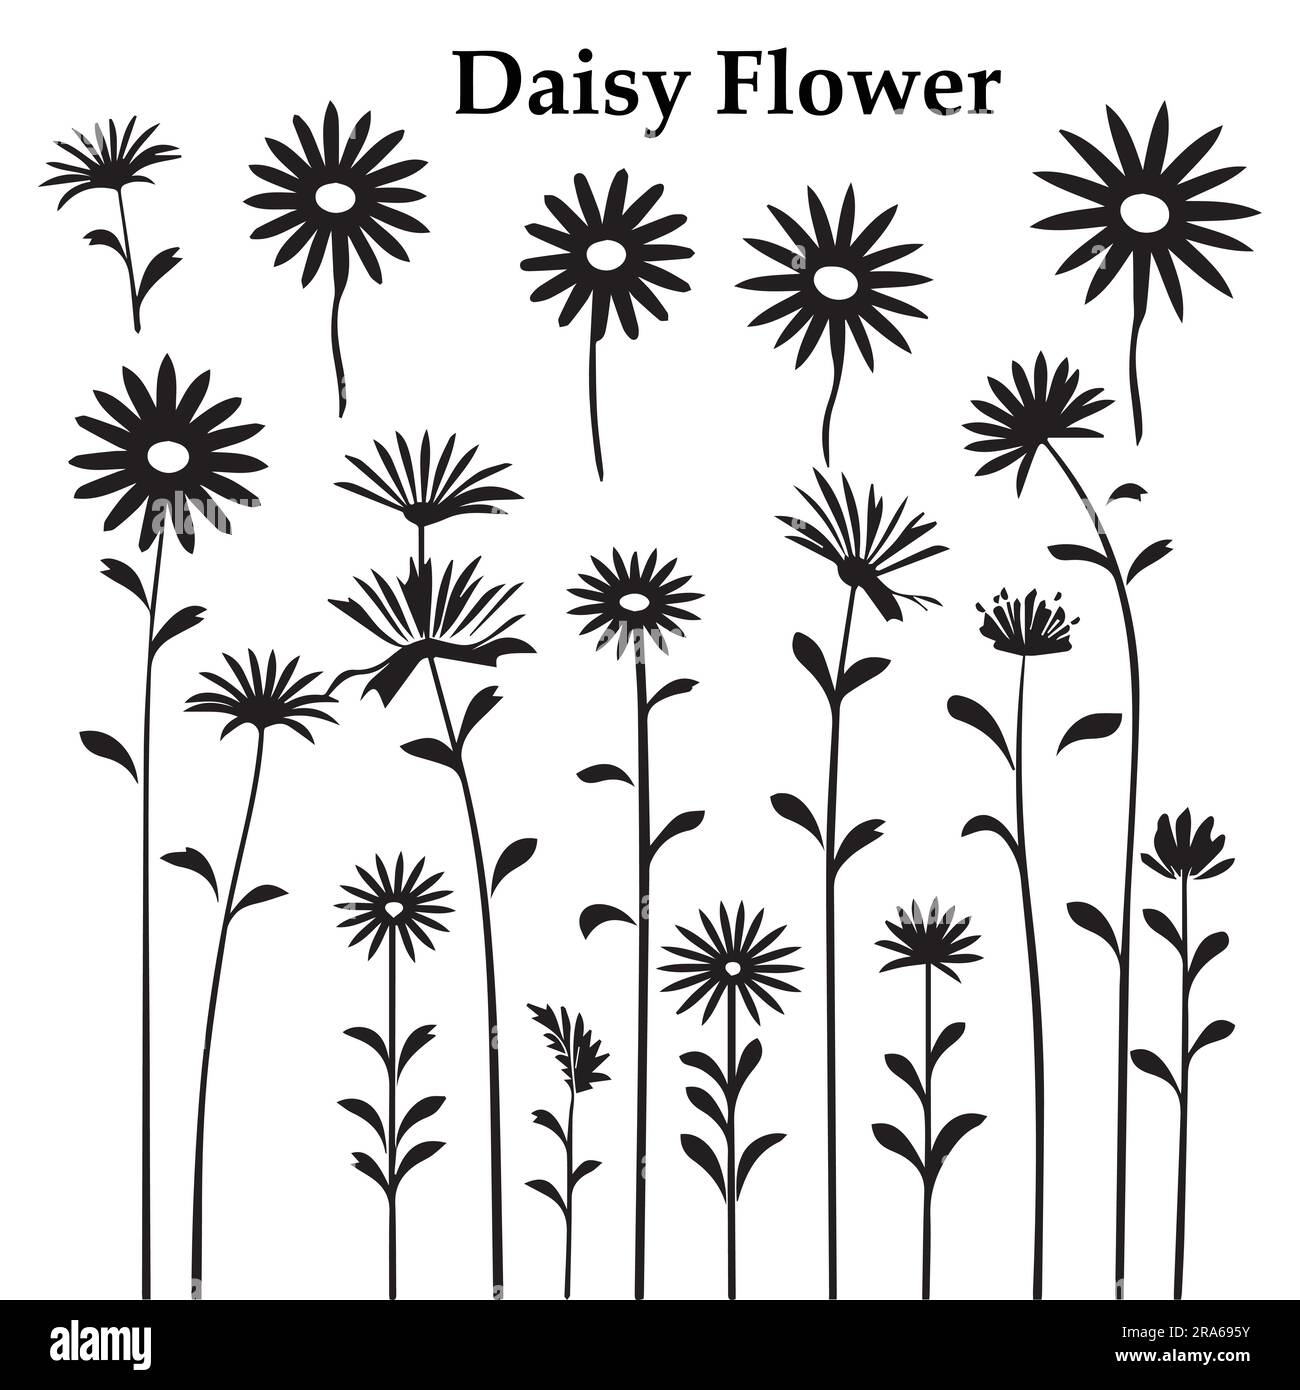 Eine Vektordarstellung der Silhouette Daisy Flower Stock Vektor